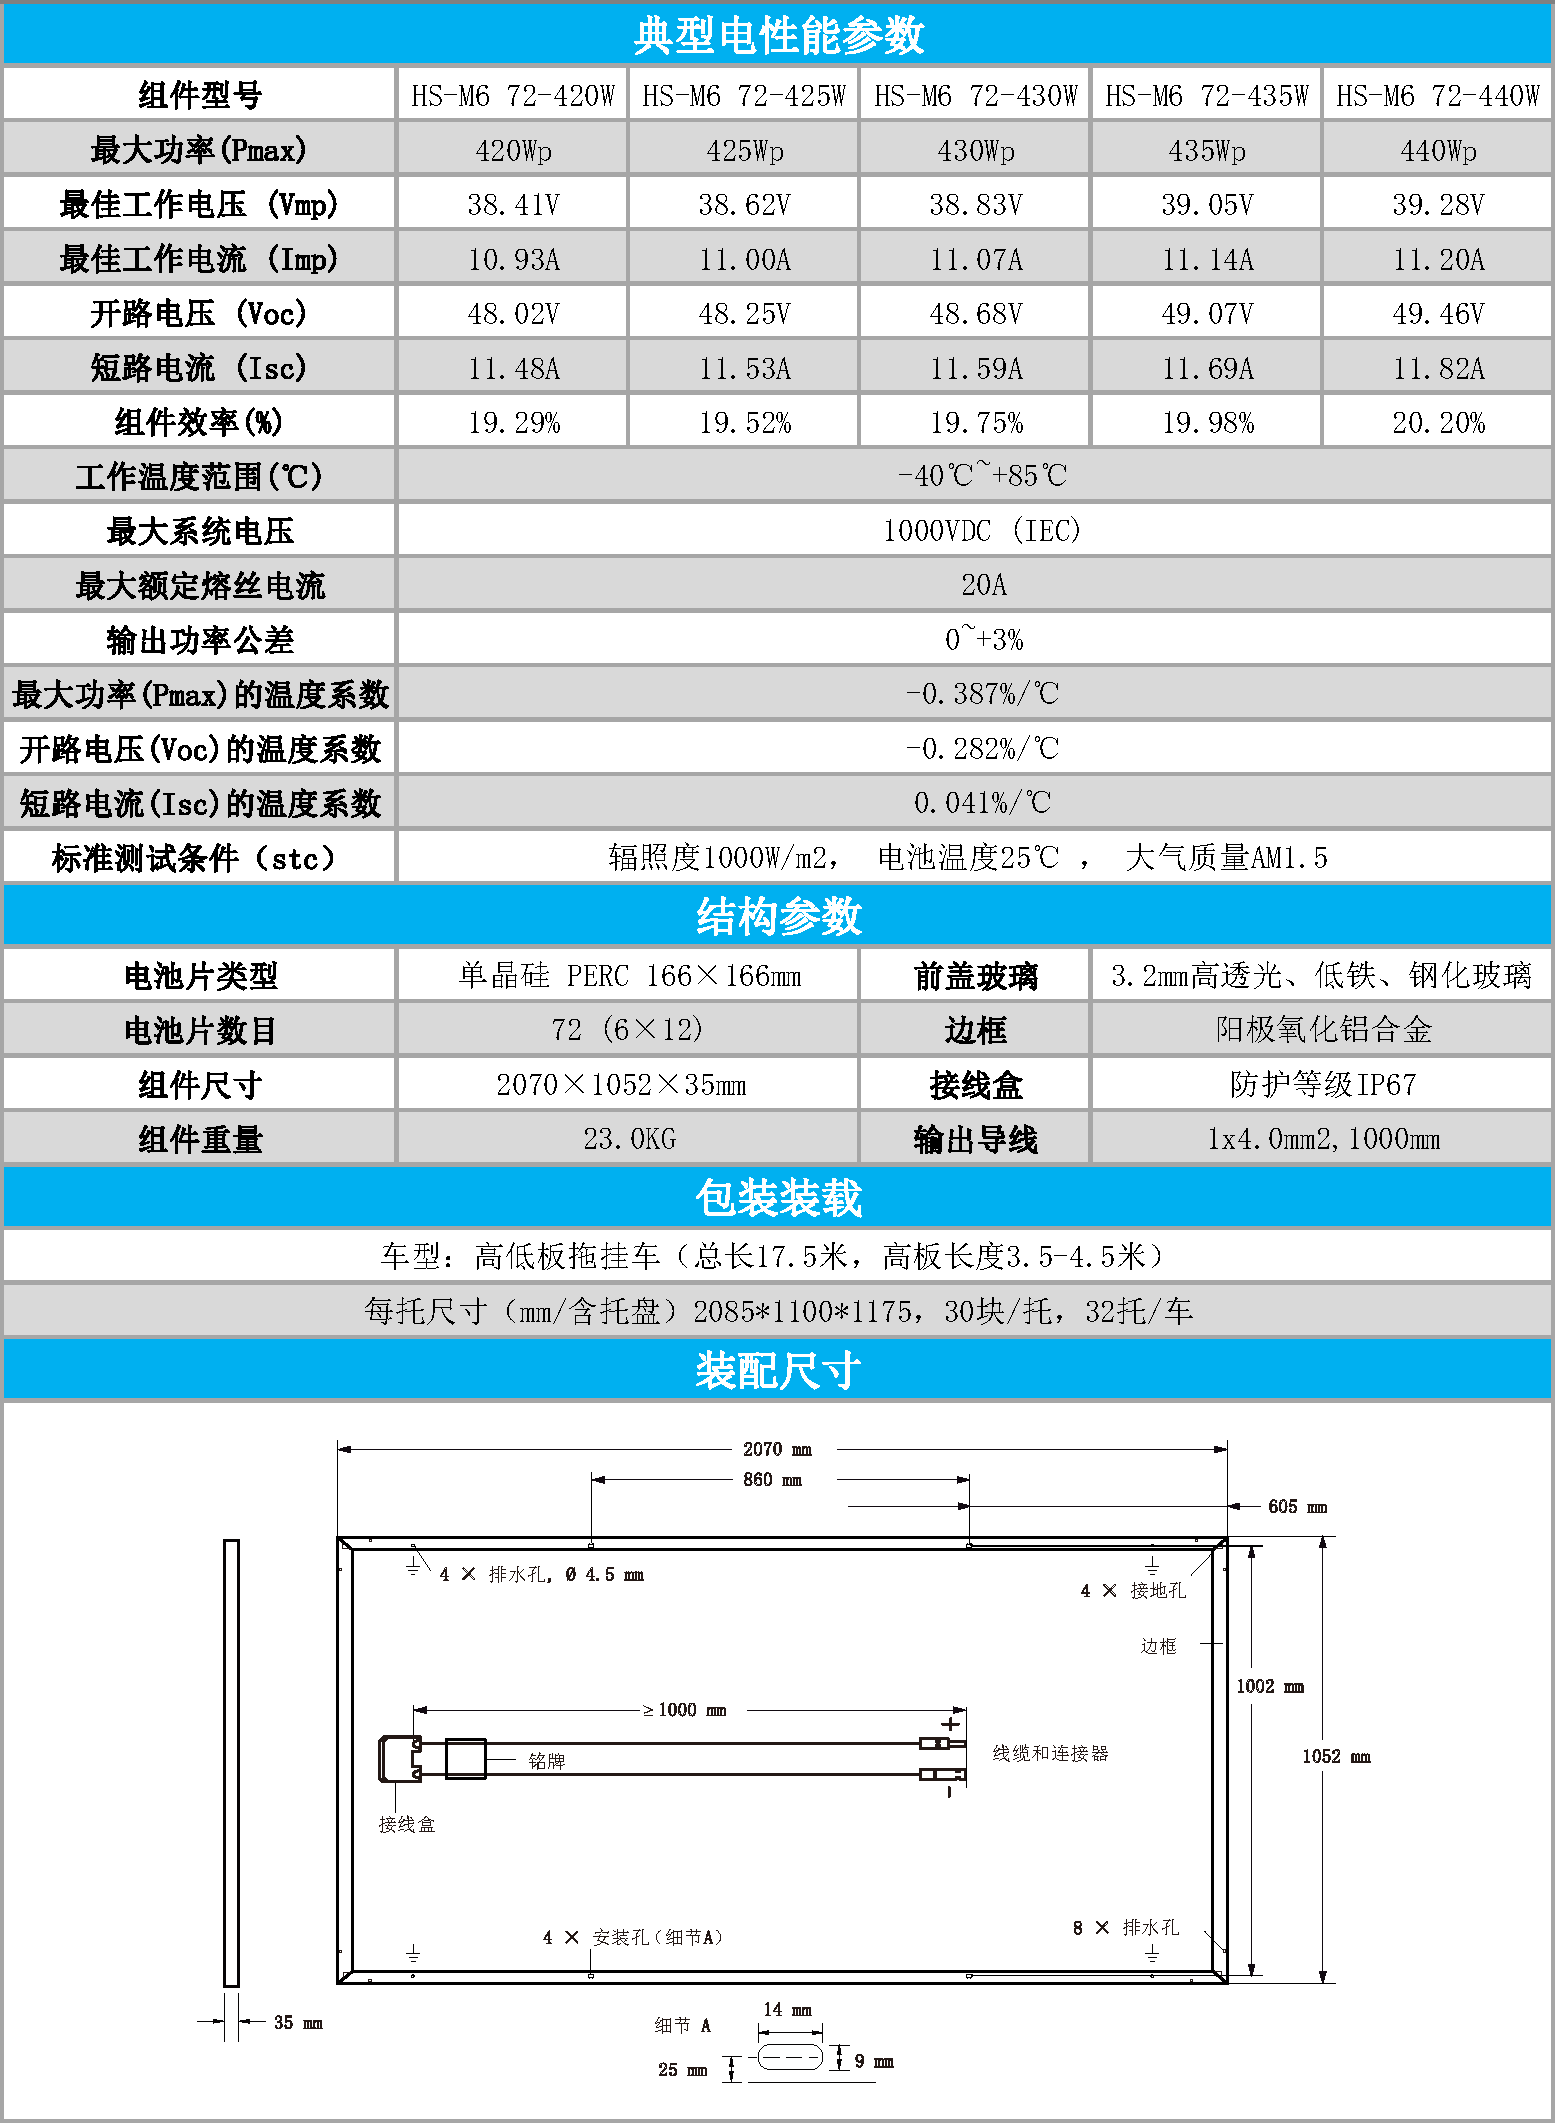 20200618单晶166电池片最新产品单页（中文）_页面_4.png